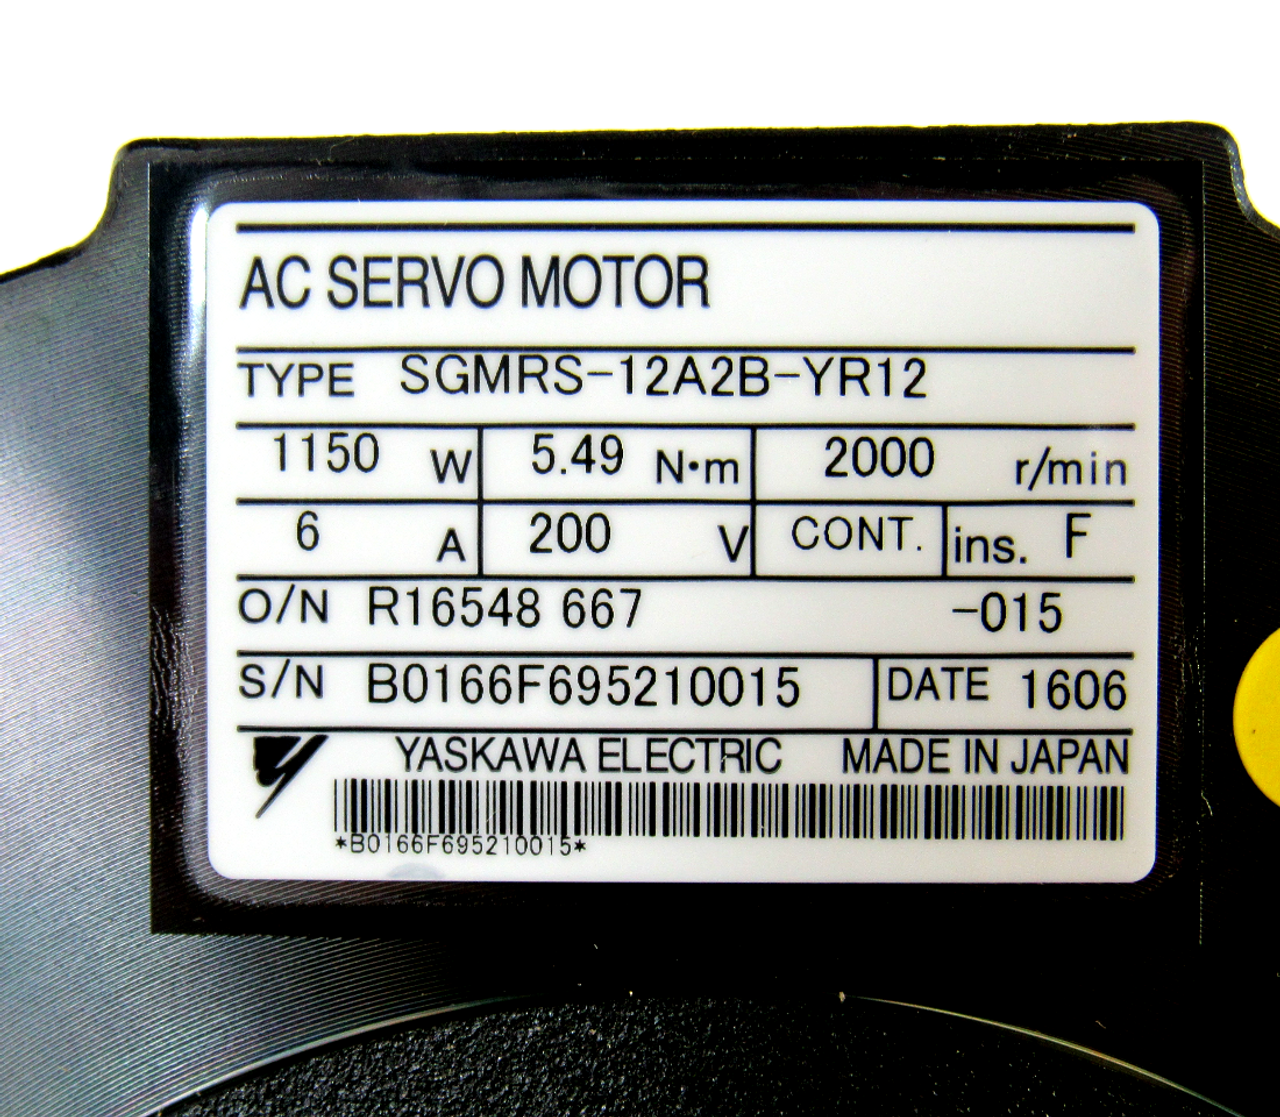 Yaskawa Electric SGMRS-12A2B-YR12 AC Servo Motor, 1150 W, 2000 r/min, 200 V, NEW